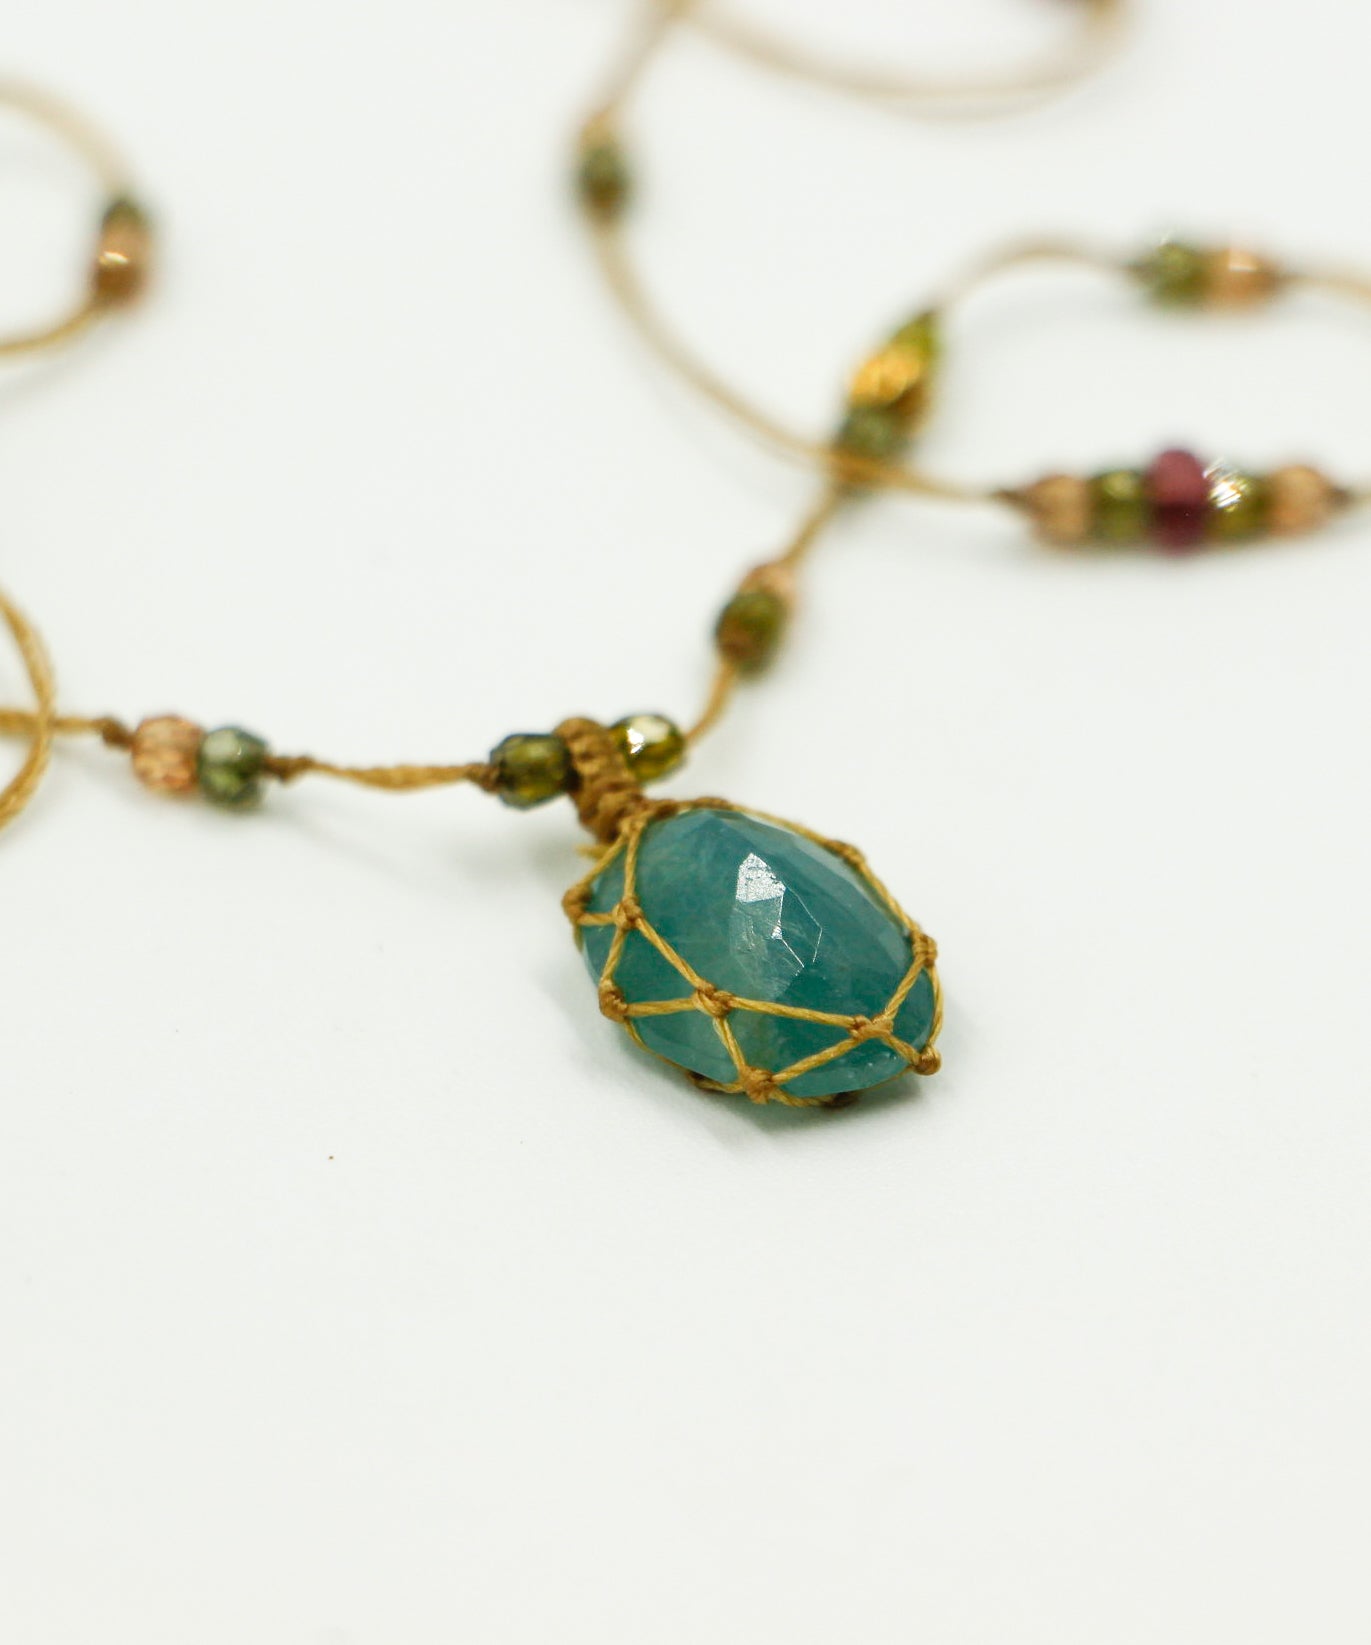 Tibetan Short Necklace - Grandidierite - Mix Sapphire - Beige Thread